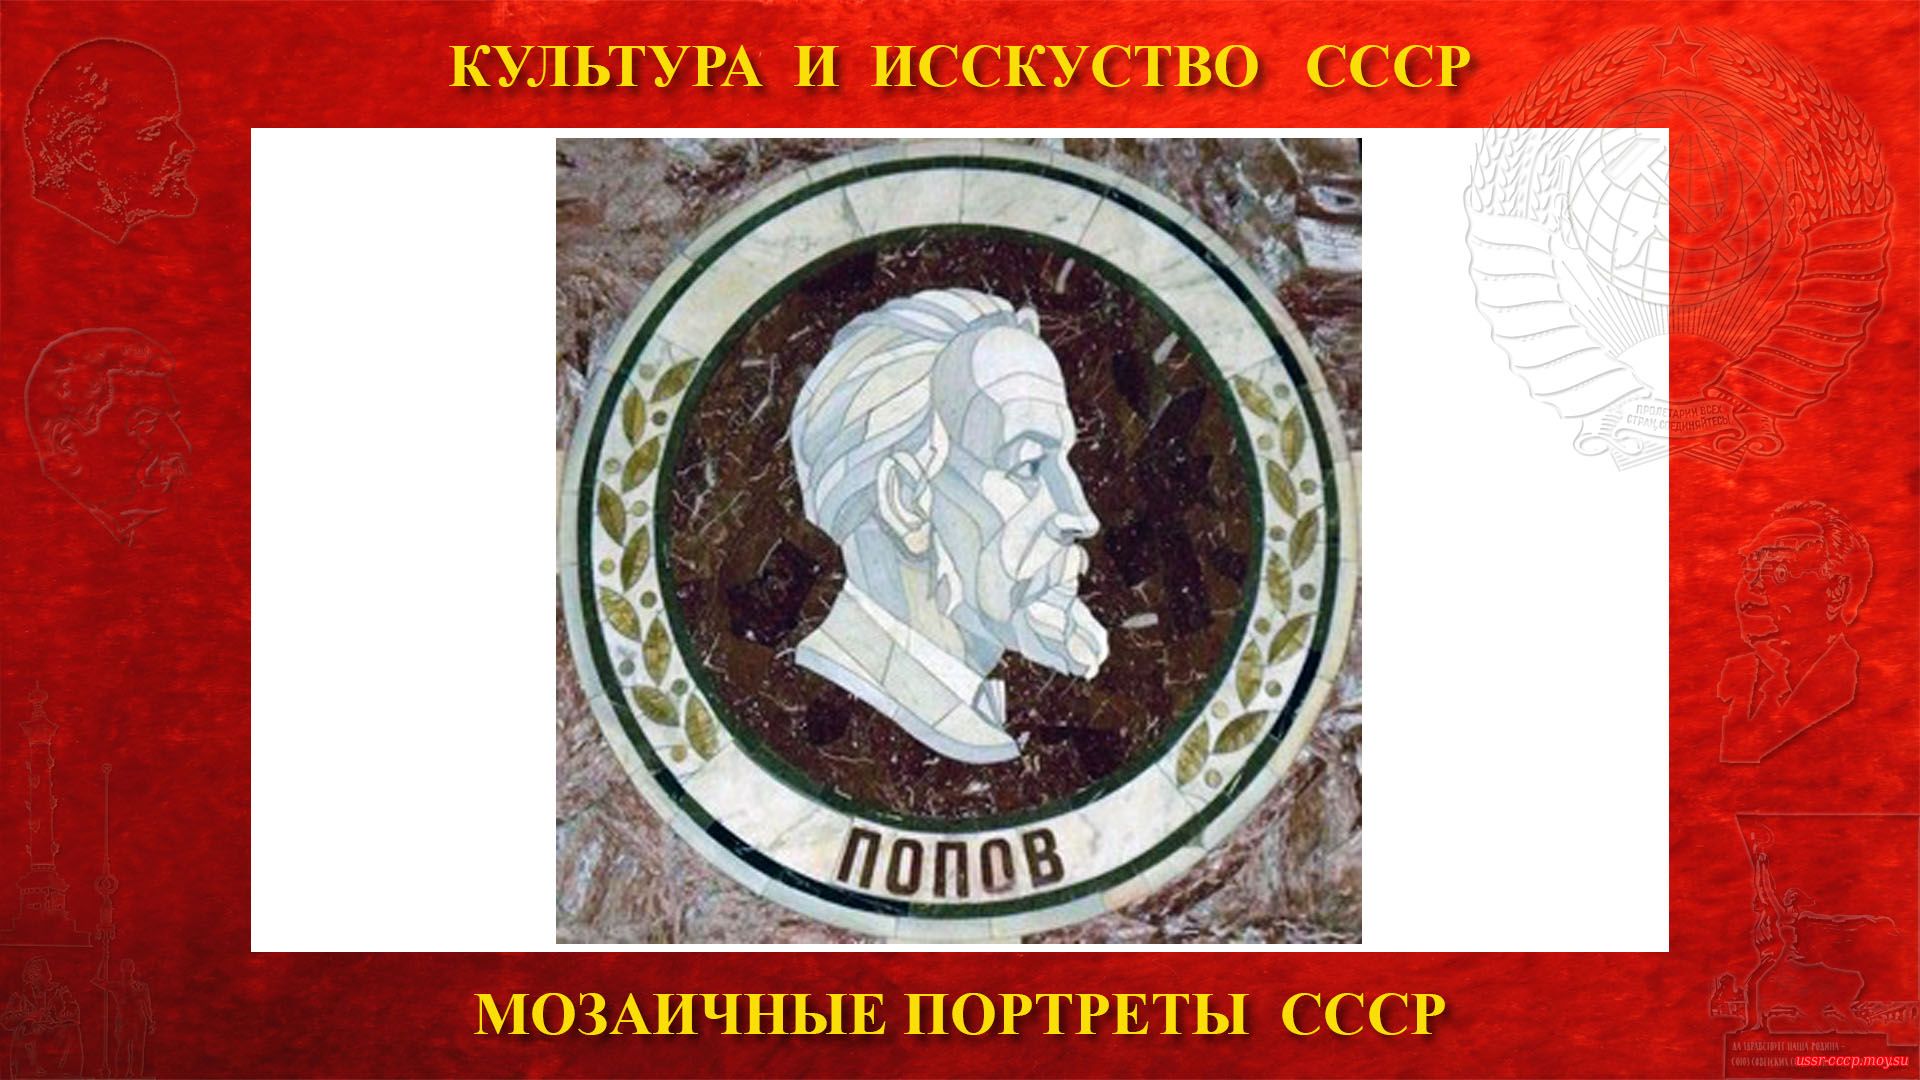 Мозаичный портрет Попову А.С. на Ленинских горах в ГЗ МГУ (Москва 1953) (повествование)